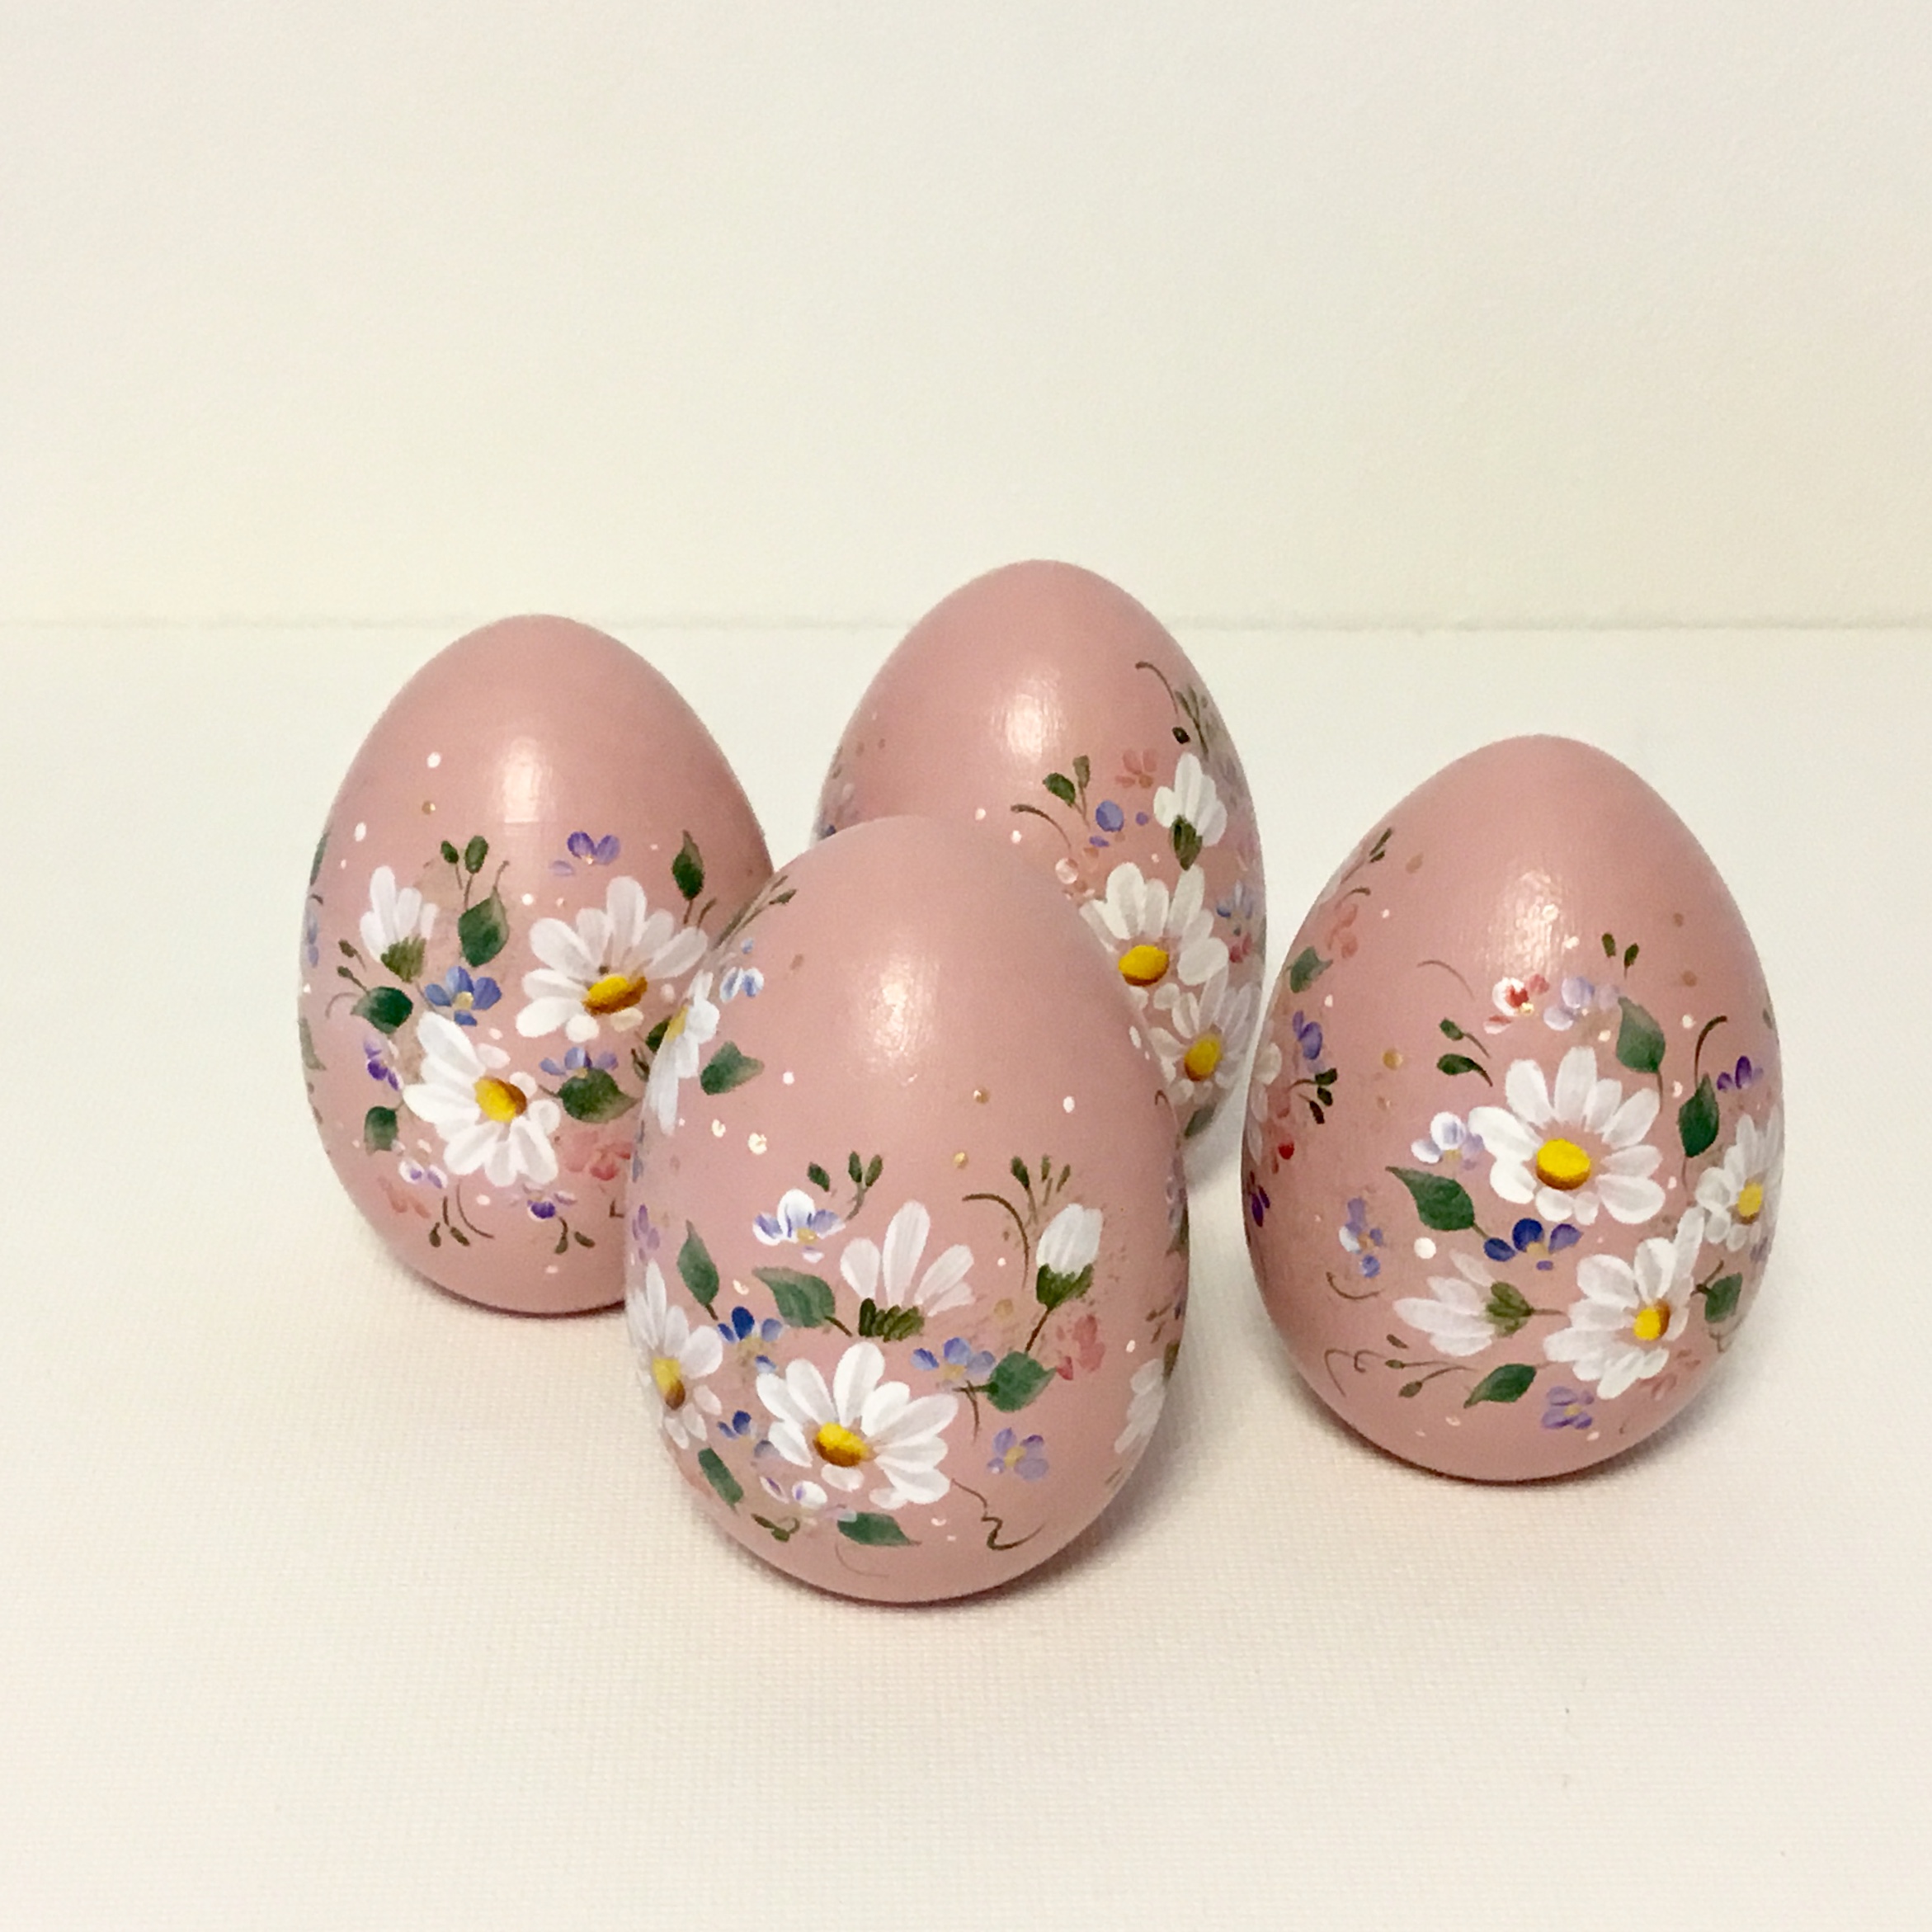 モーヴピンク色の花の木製イースターエッグ 1個 Iichi ハンドメイド クラフト作品 手仕事品の通販